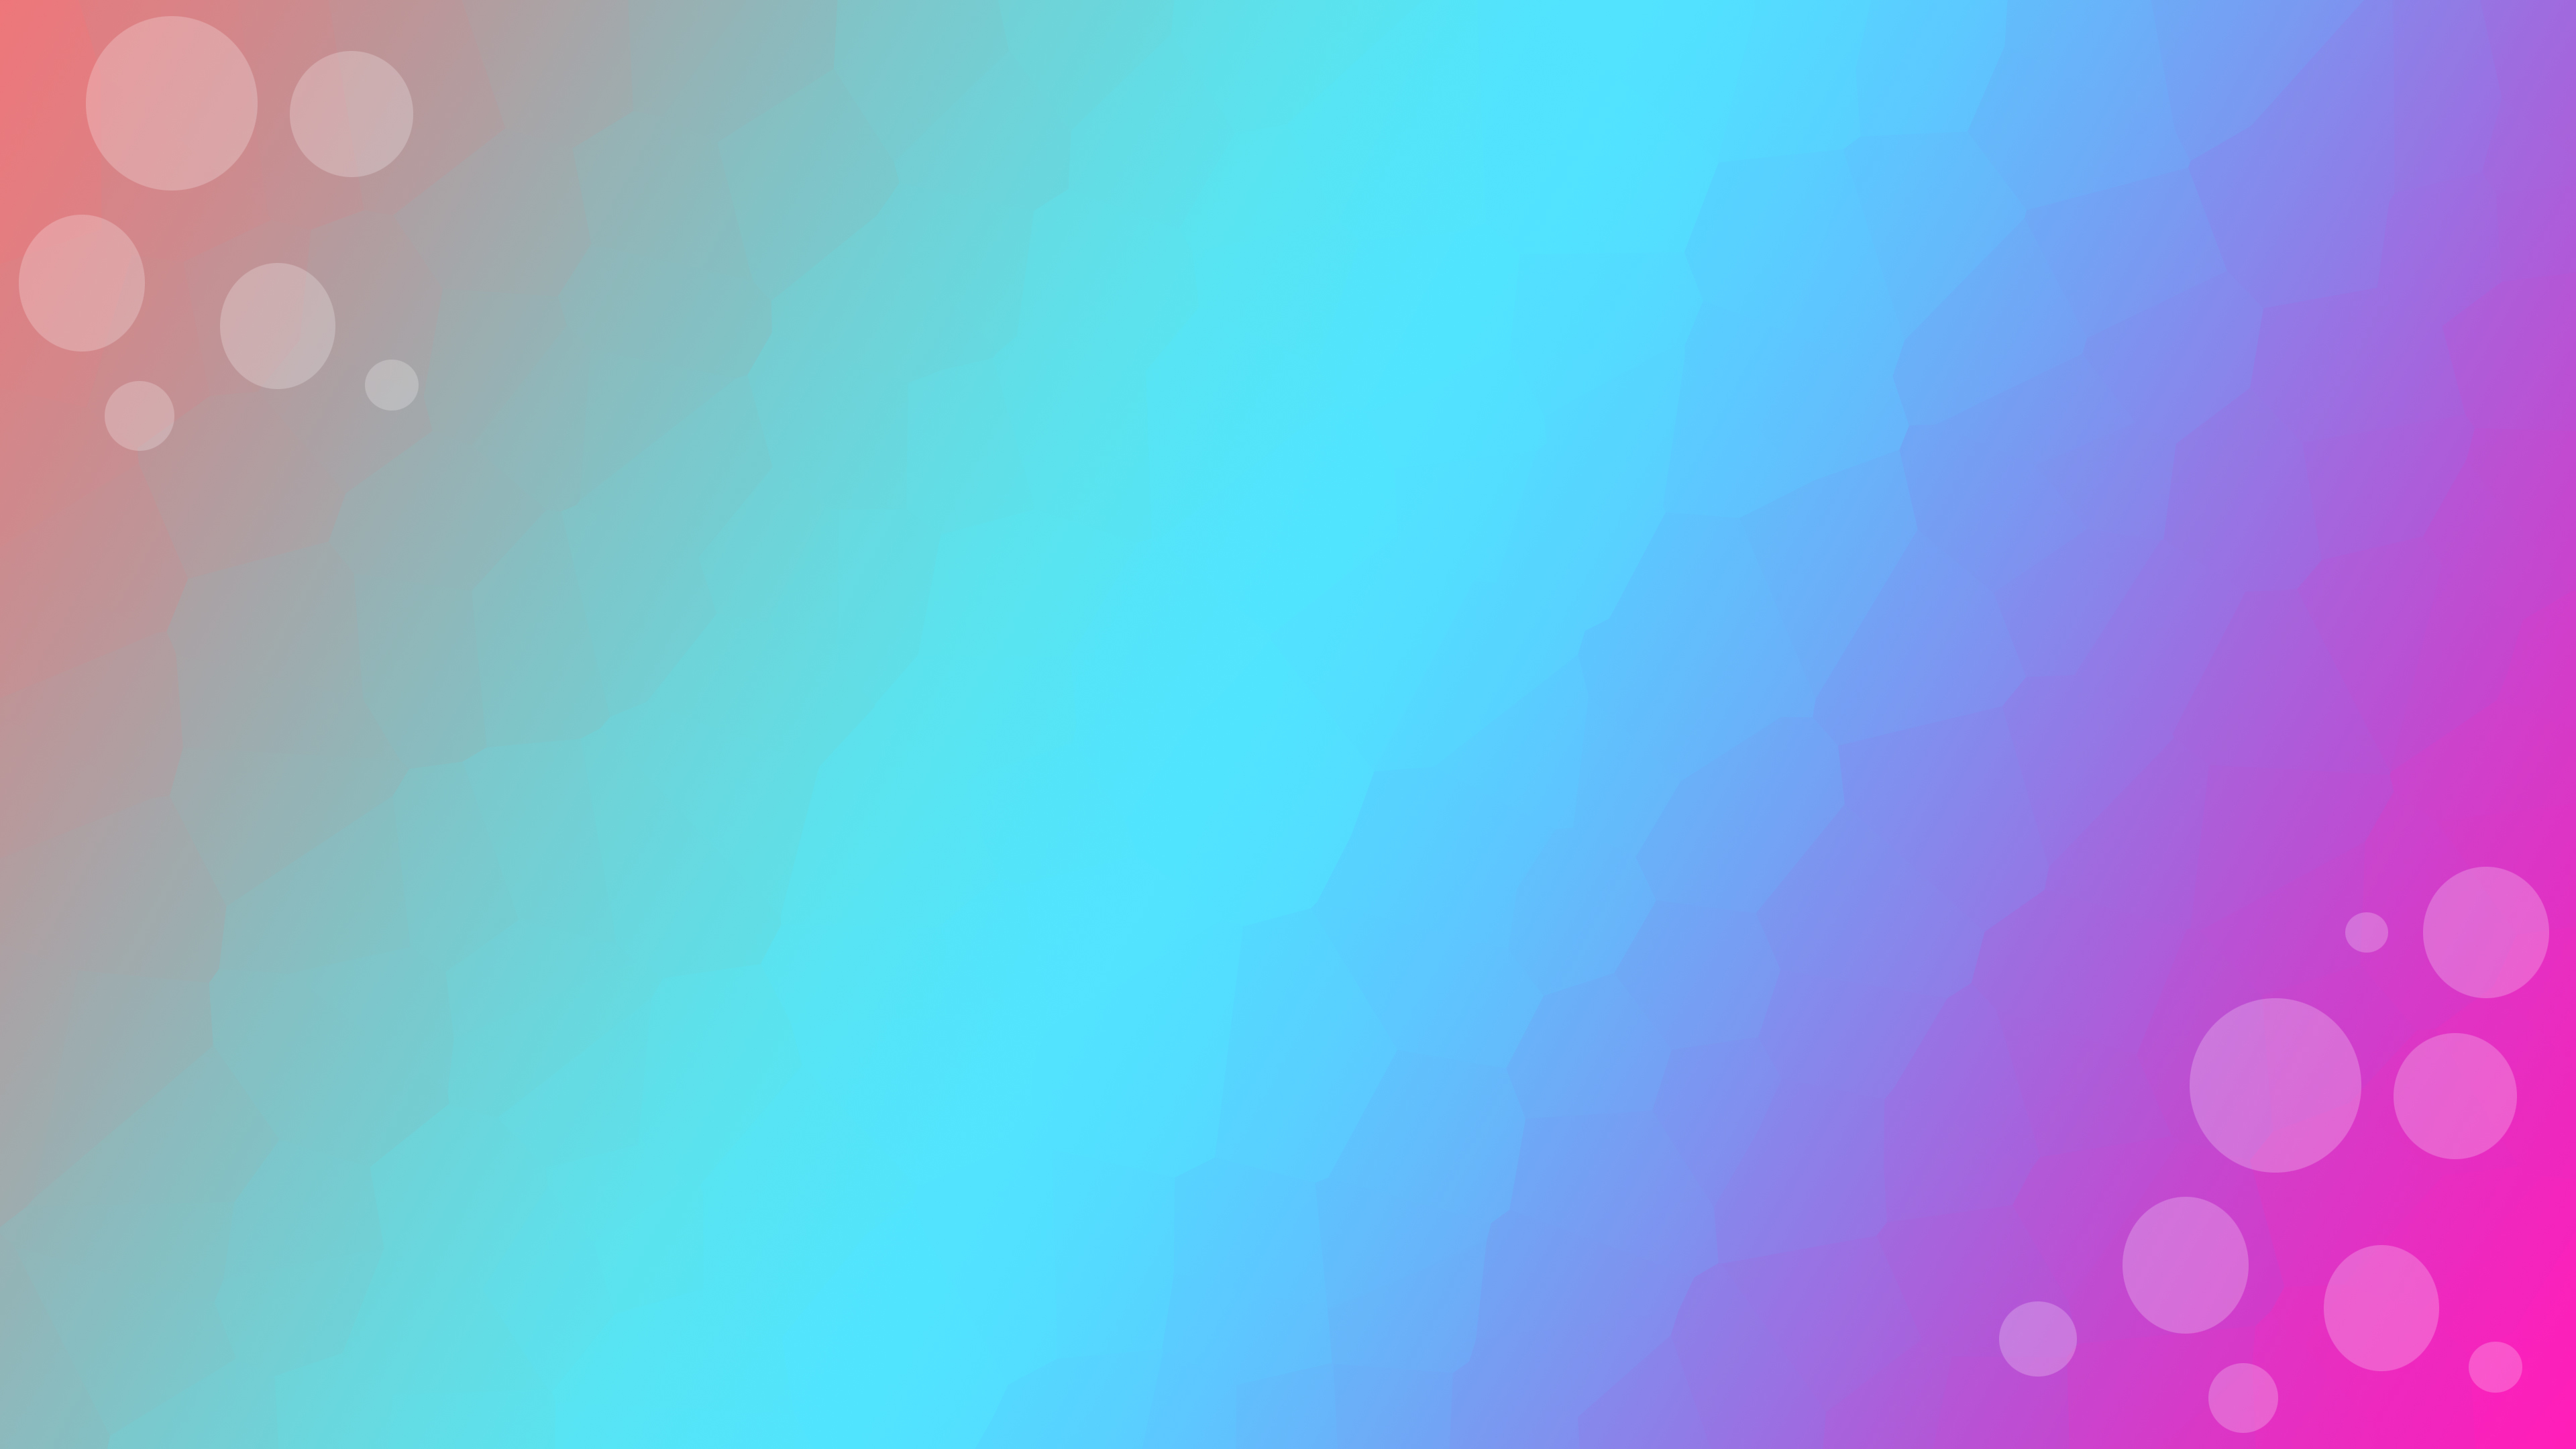 mezclar color fondo de pantalla hd,azul,púrpura,agua,violeta,rosado